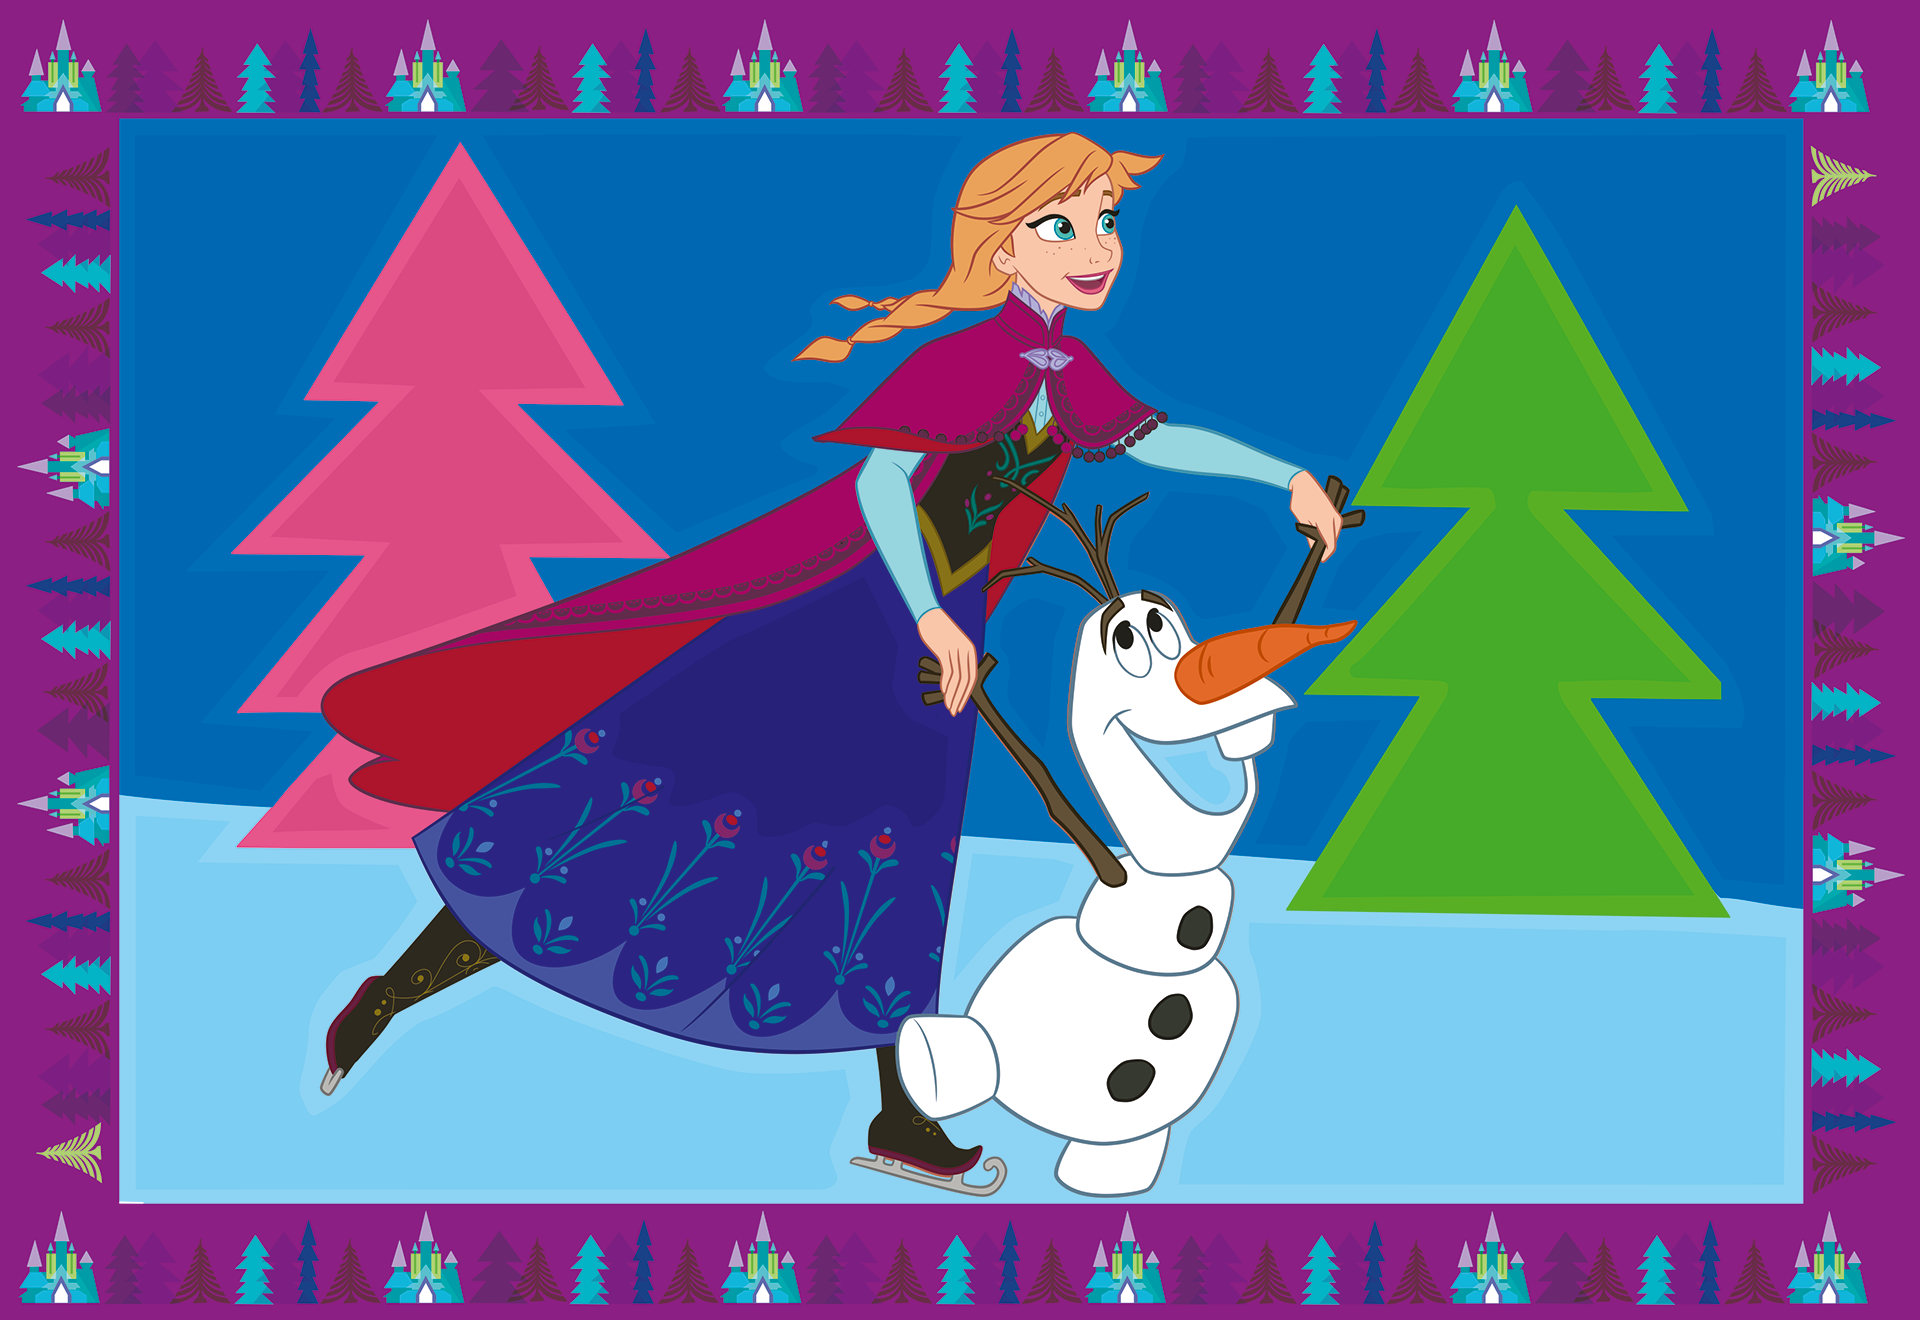 Ravensburer - creart serie junior, disney frozen, kit dipingere con i numeri, contiene 2 tavole prestampate, pennello, colori, gioco creativo per maschi e femmine dai 5+ anni di età - DISNEY PRINCESS, RAVENSBURGER, Frozen